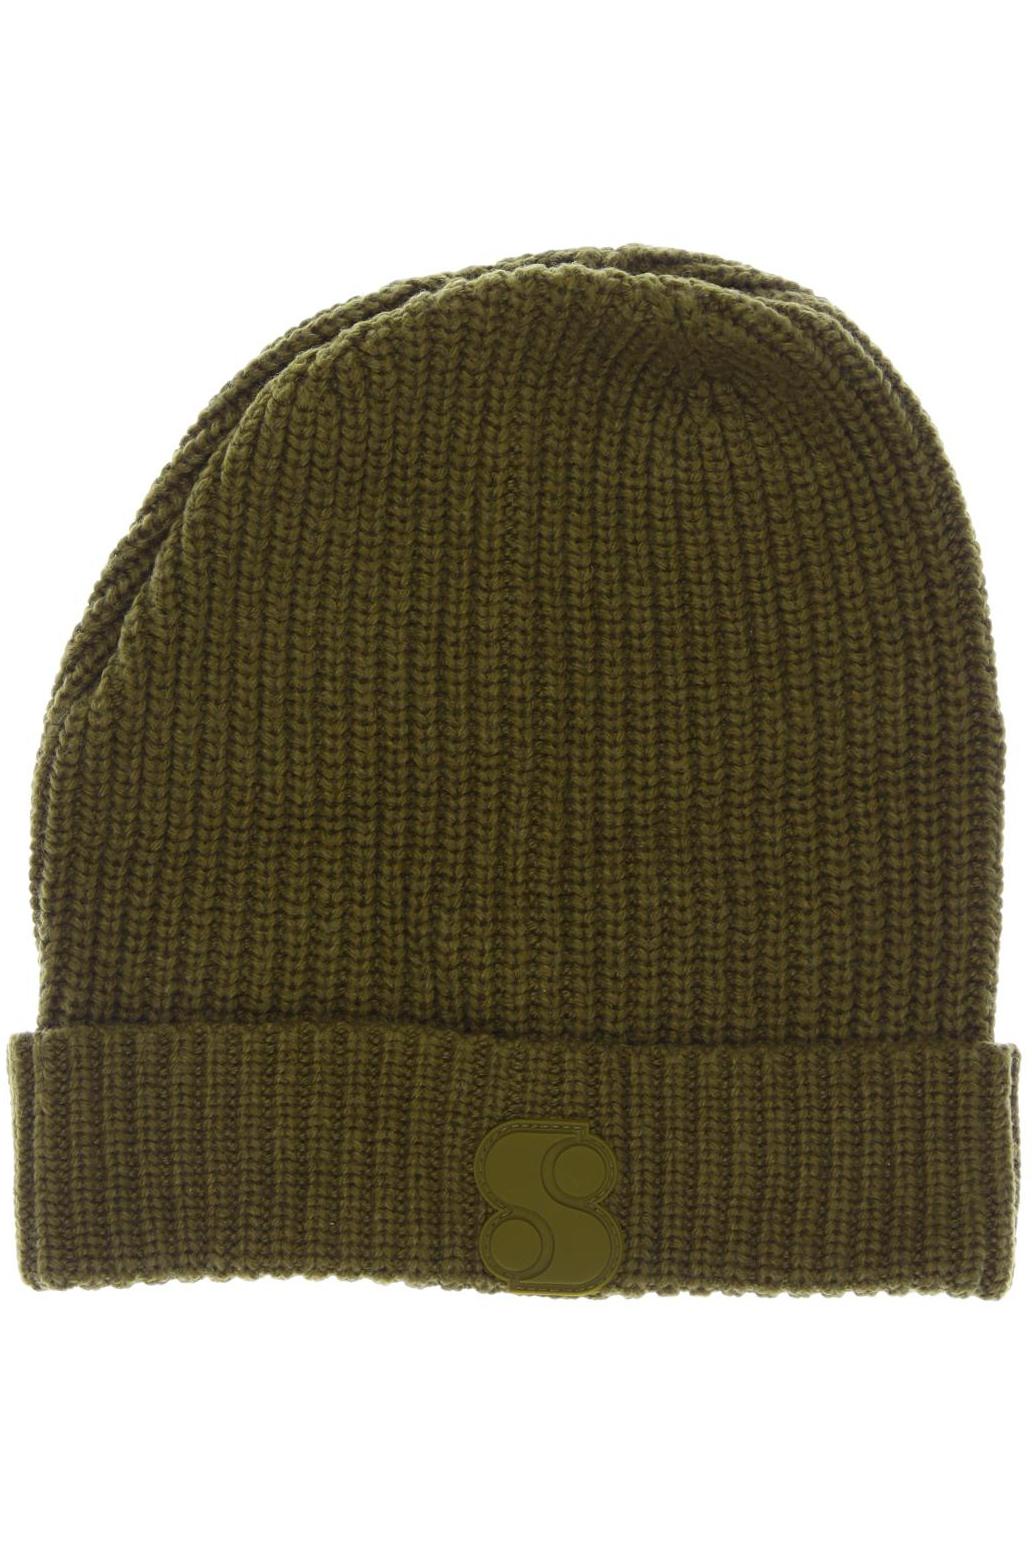 s.Oliver Damen Hut/Mütze, grün von s.Oliver